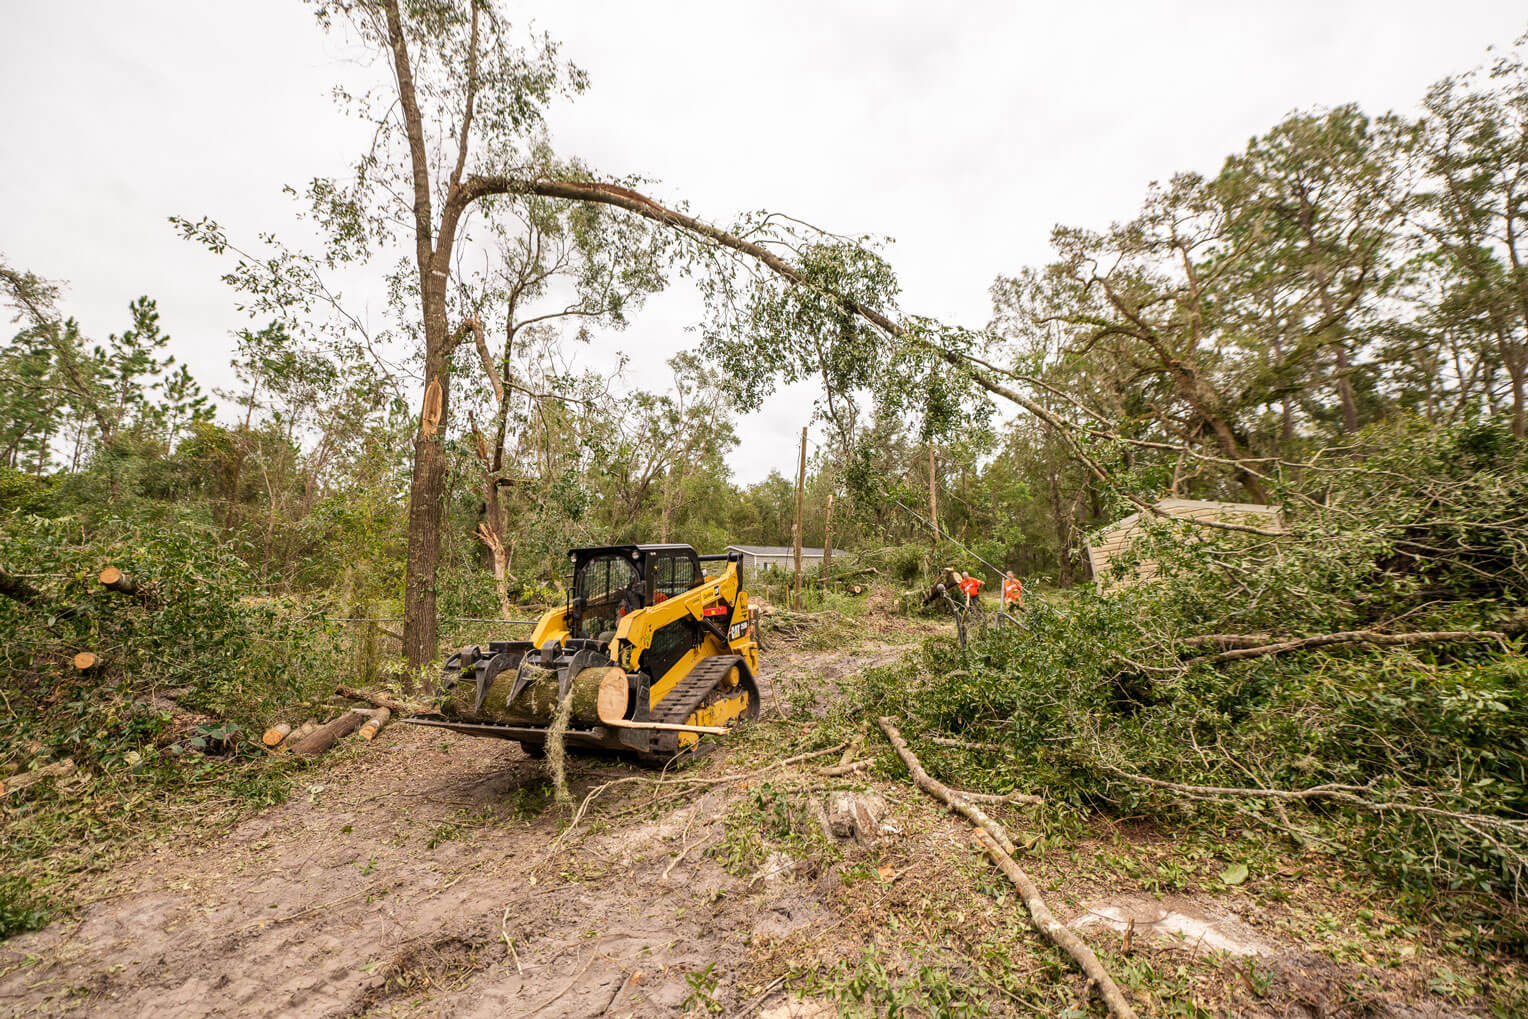 Con una cargadora compacta y otras maquinarias, nuestros equipos pudieron cortar y remover árboles, despejando un camino hacia la casa.